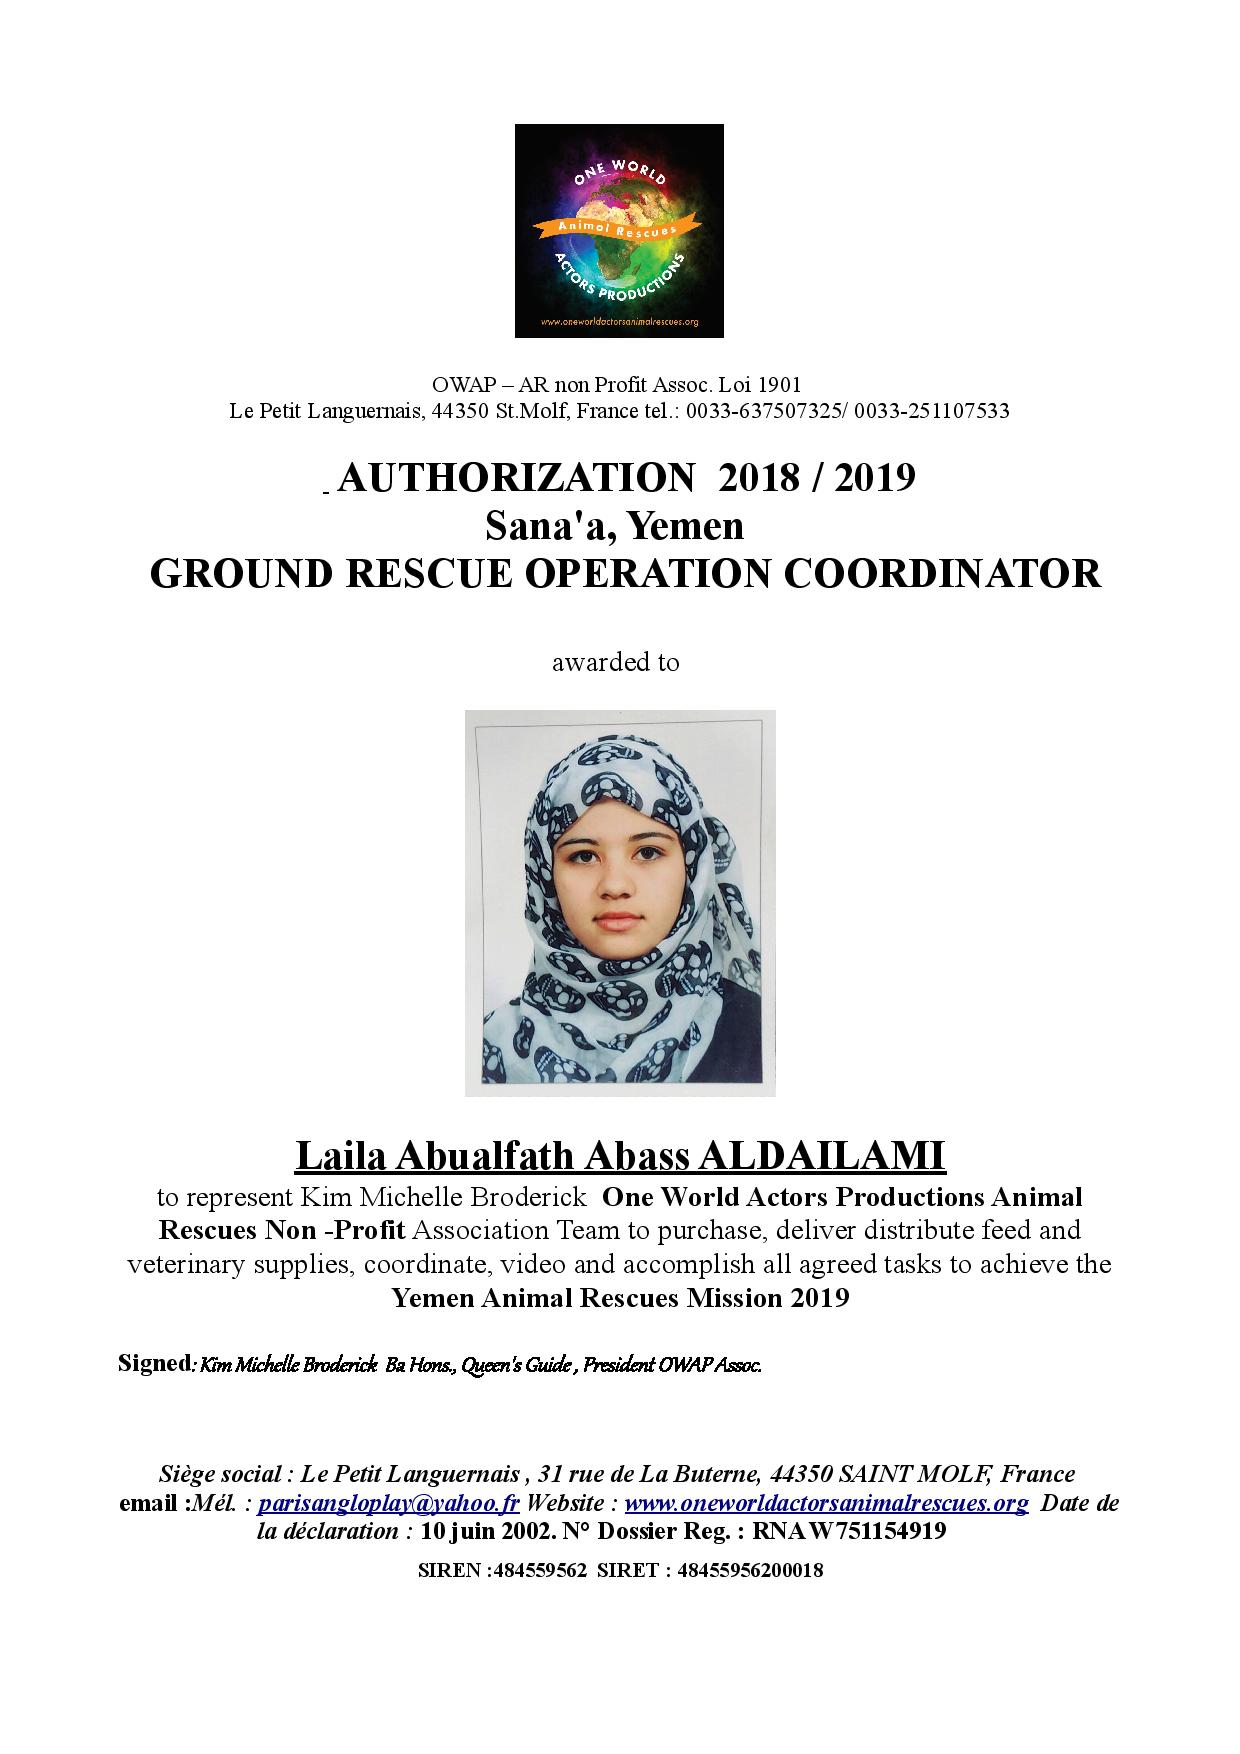 auth Laila Abualfath Abass ALDAILAMI OWAP AR-page-001.jpg